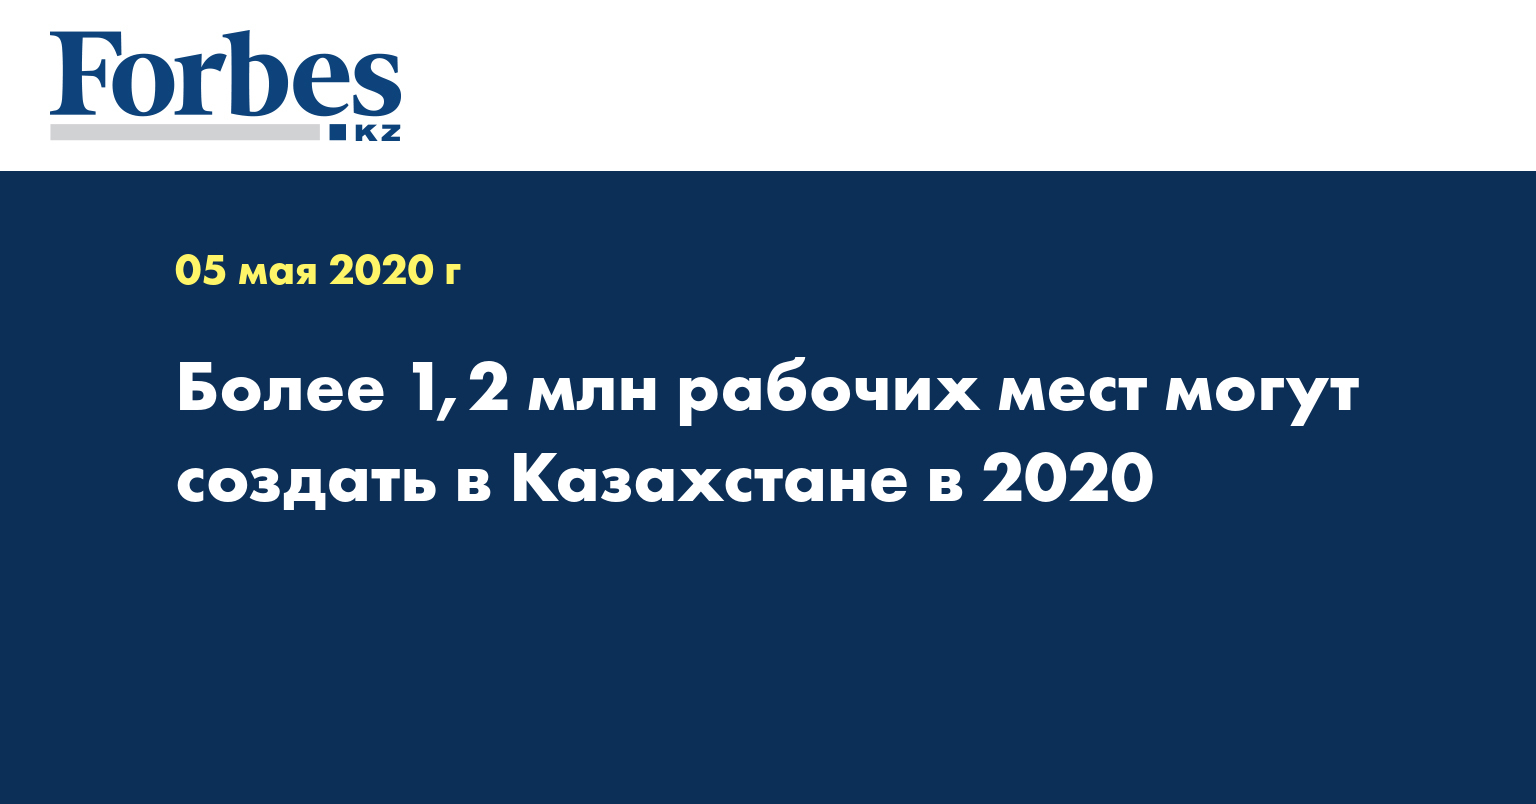 Более 1,2 млн рабочих мест могут создать в Казахстане в 2020 